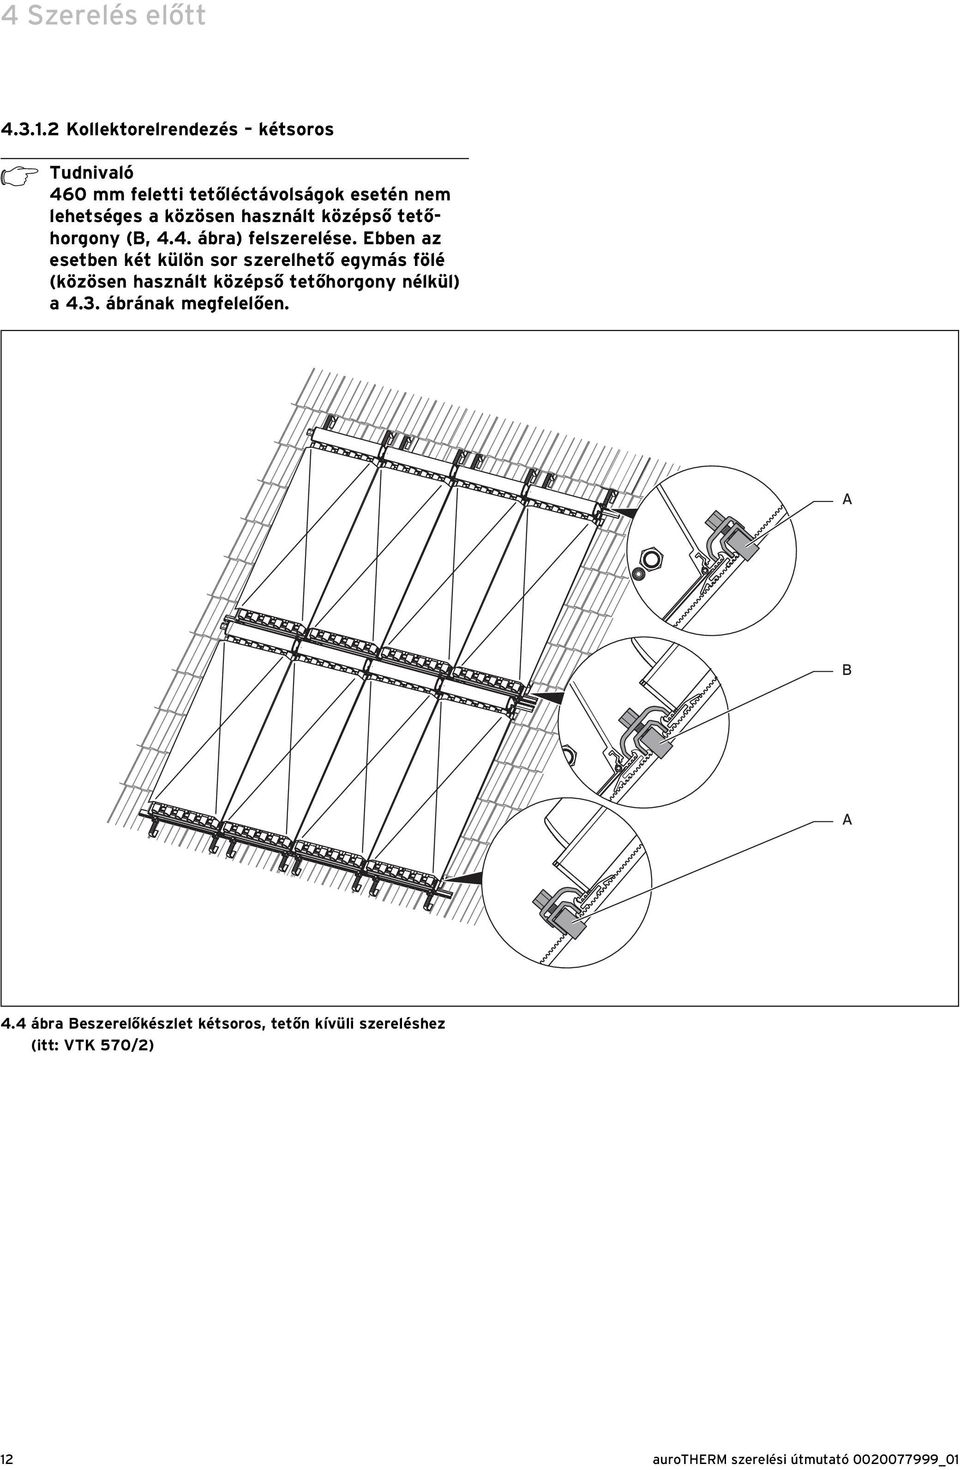 közösen használt középső tetőhorgony (B, 4.4. ábra) felszerelése.